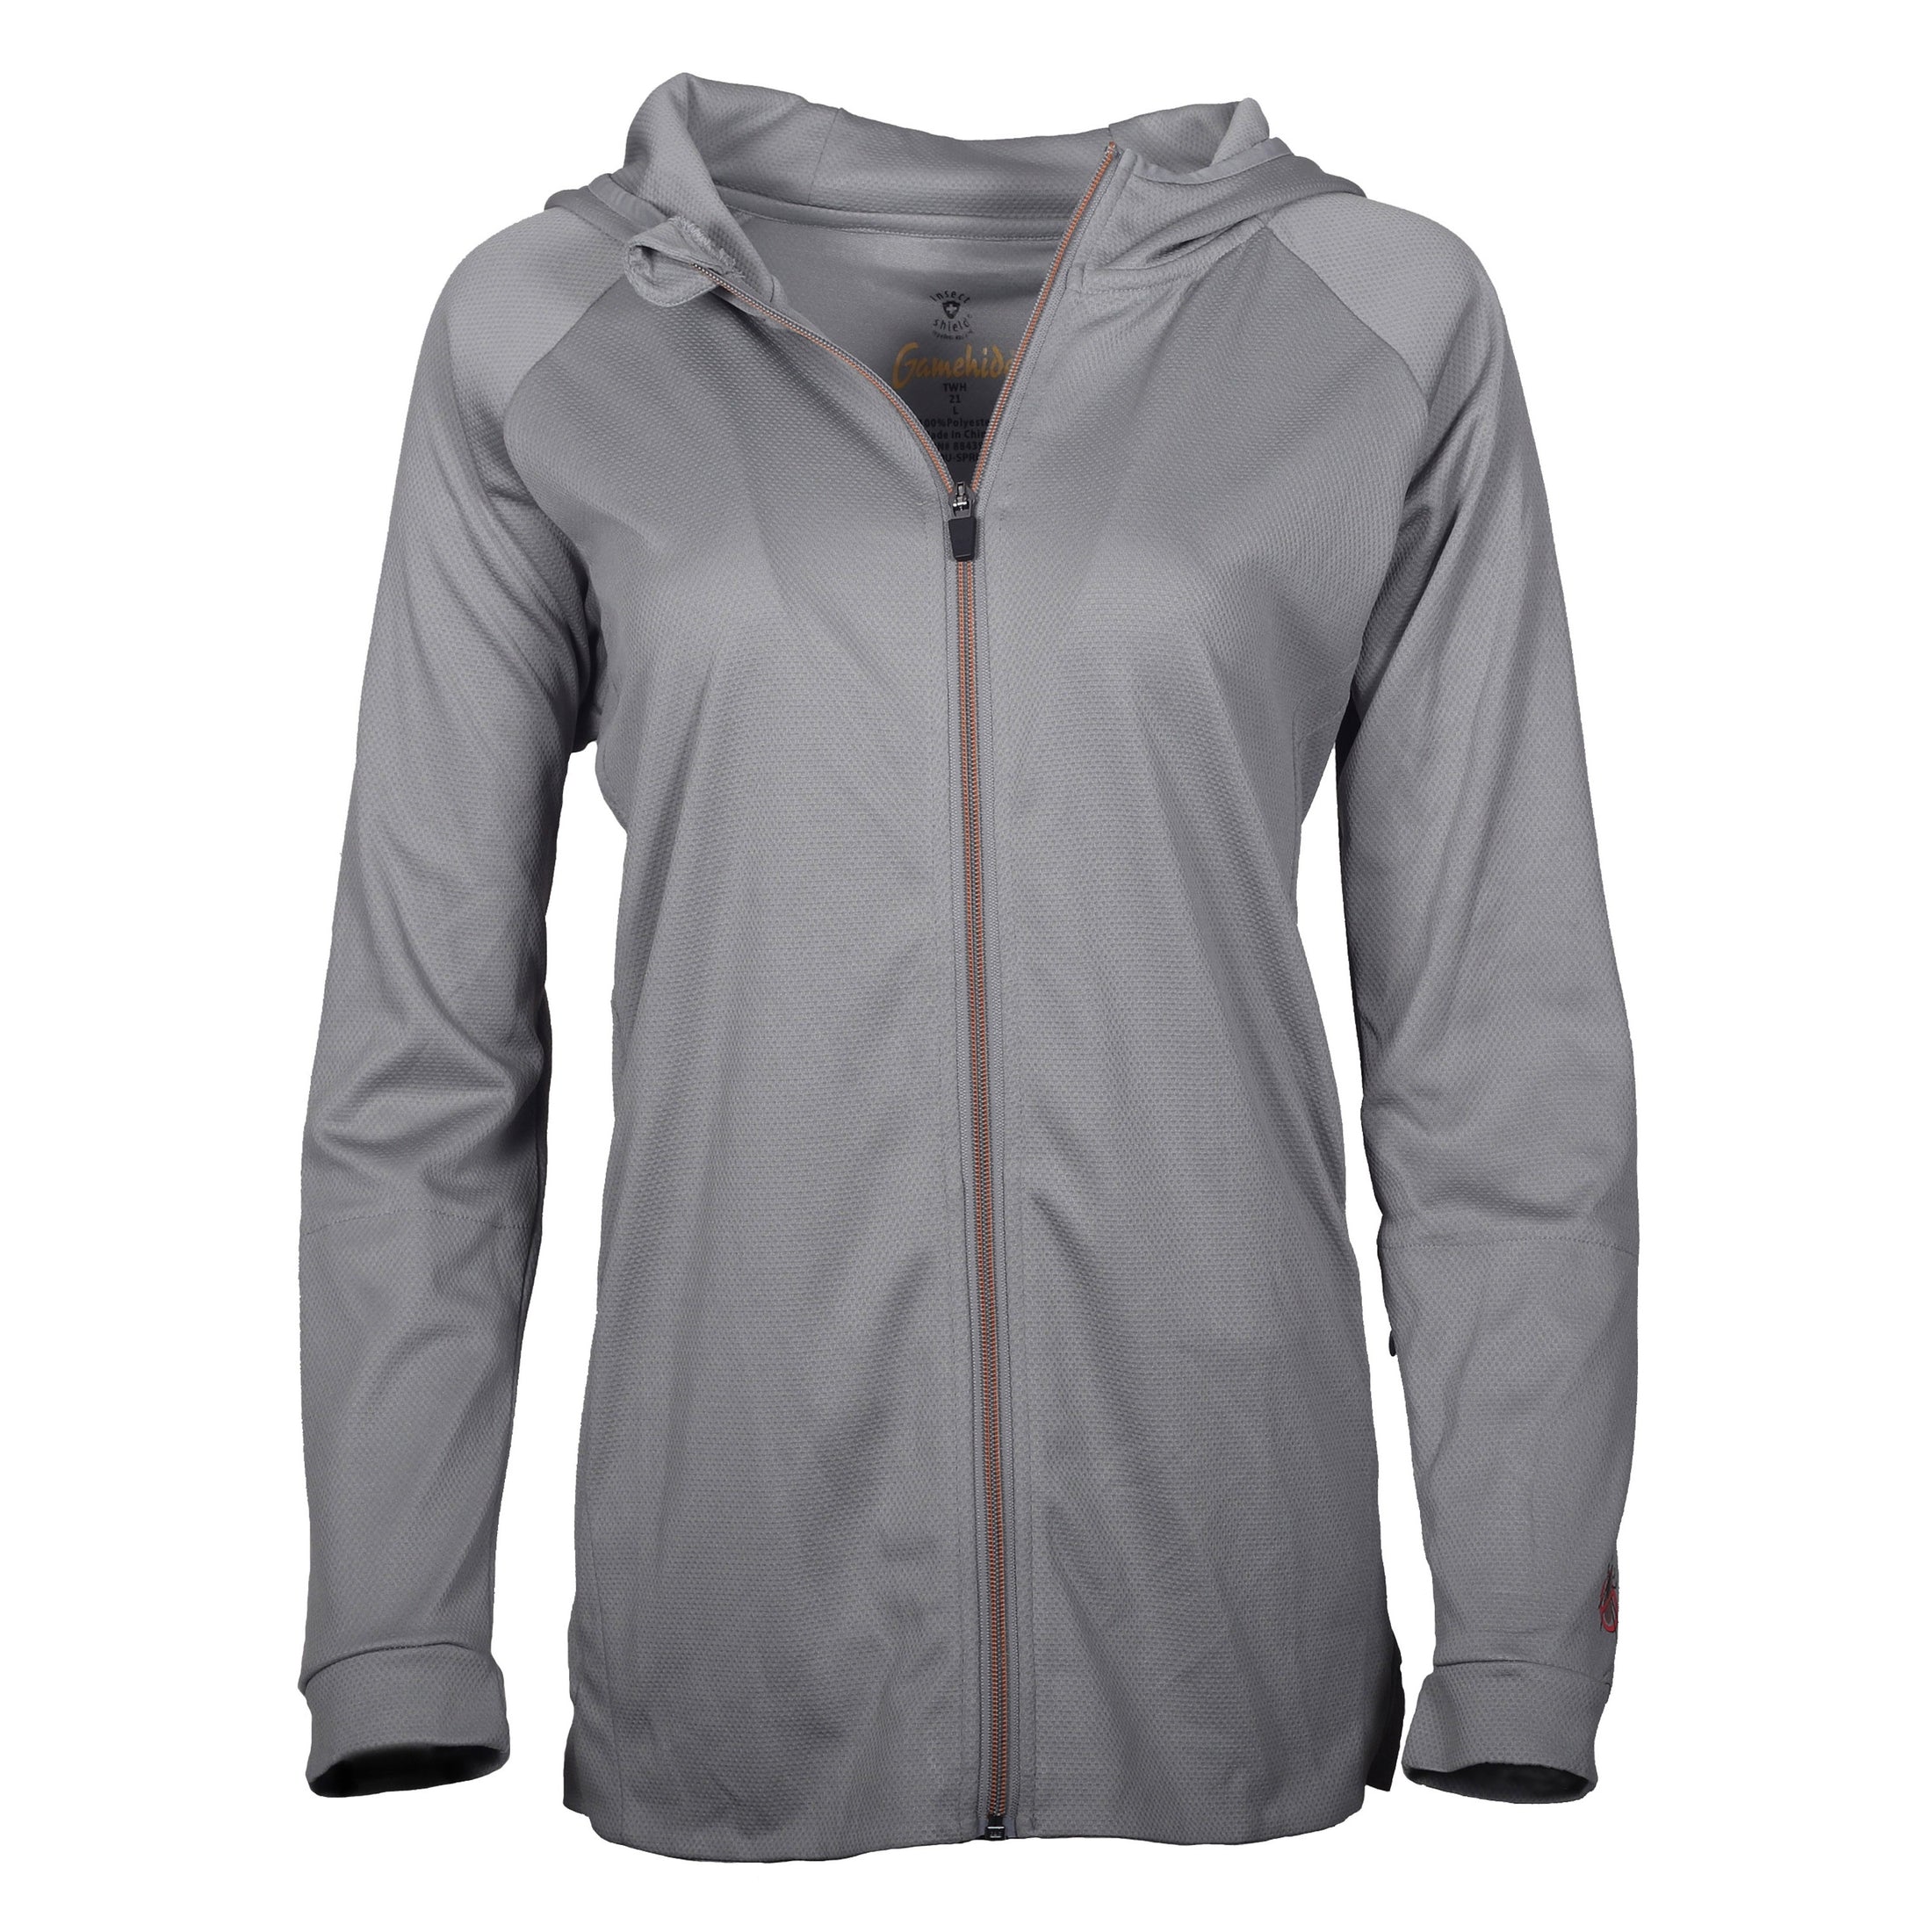 gamehide womens elimitick full zip jacket (grey)